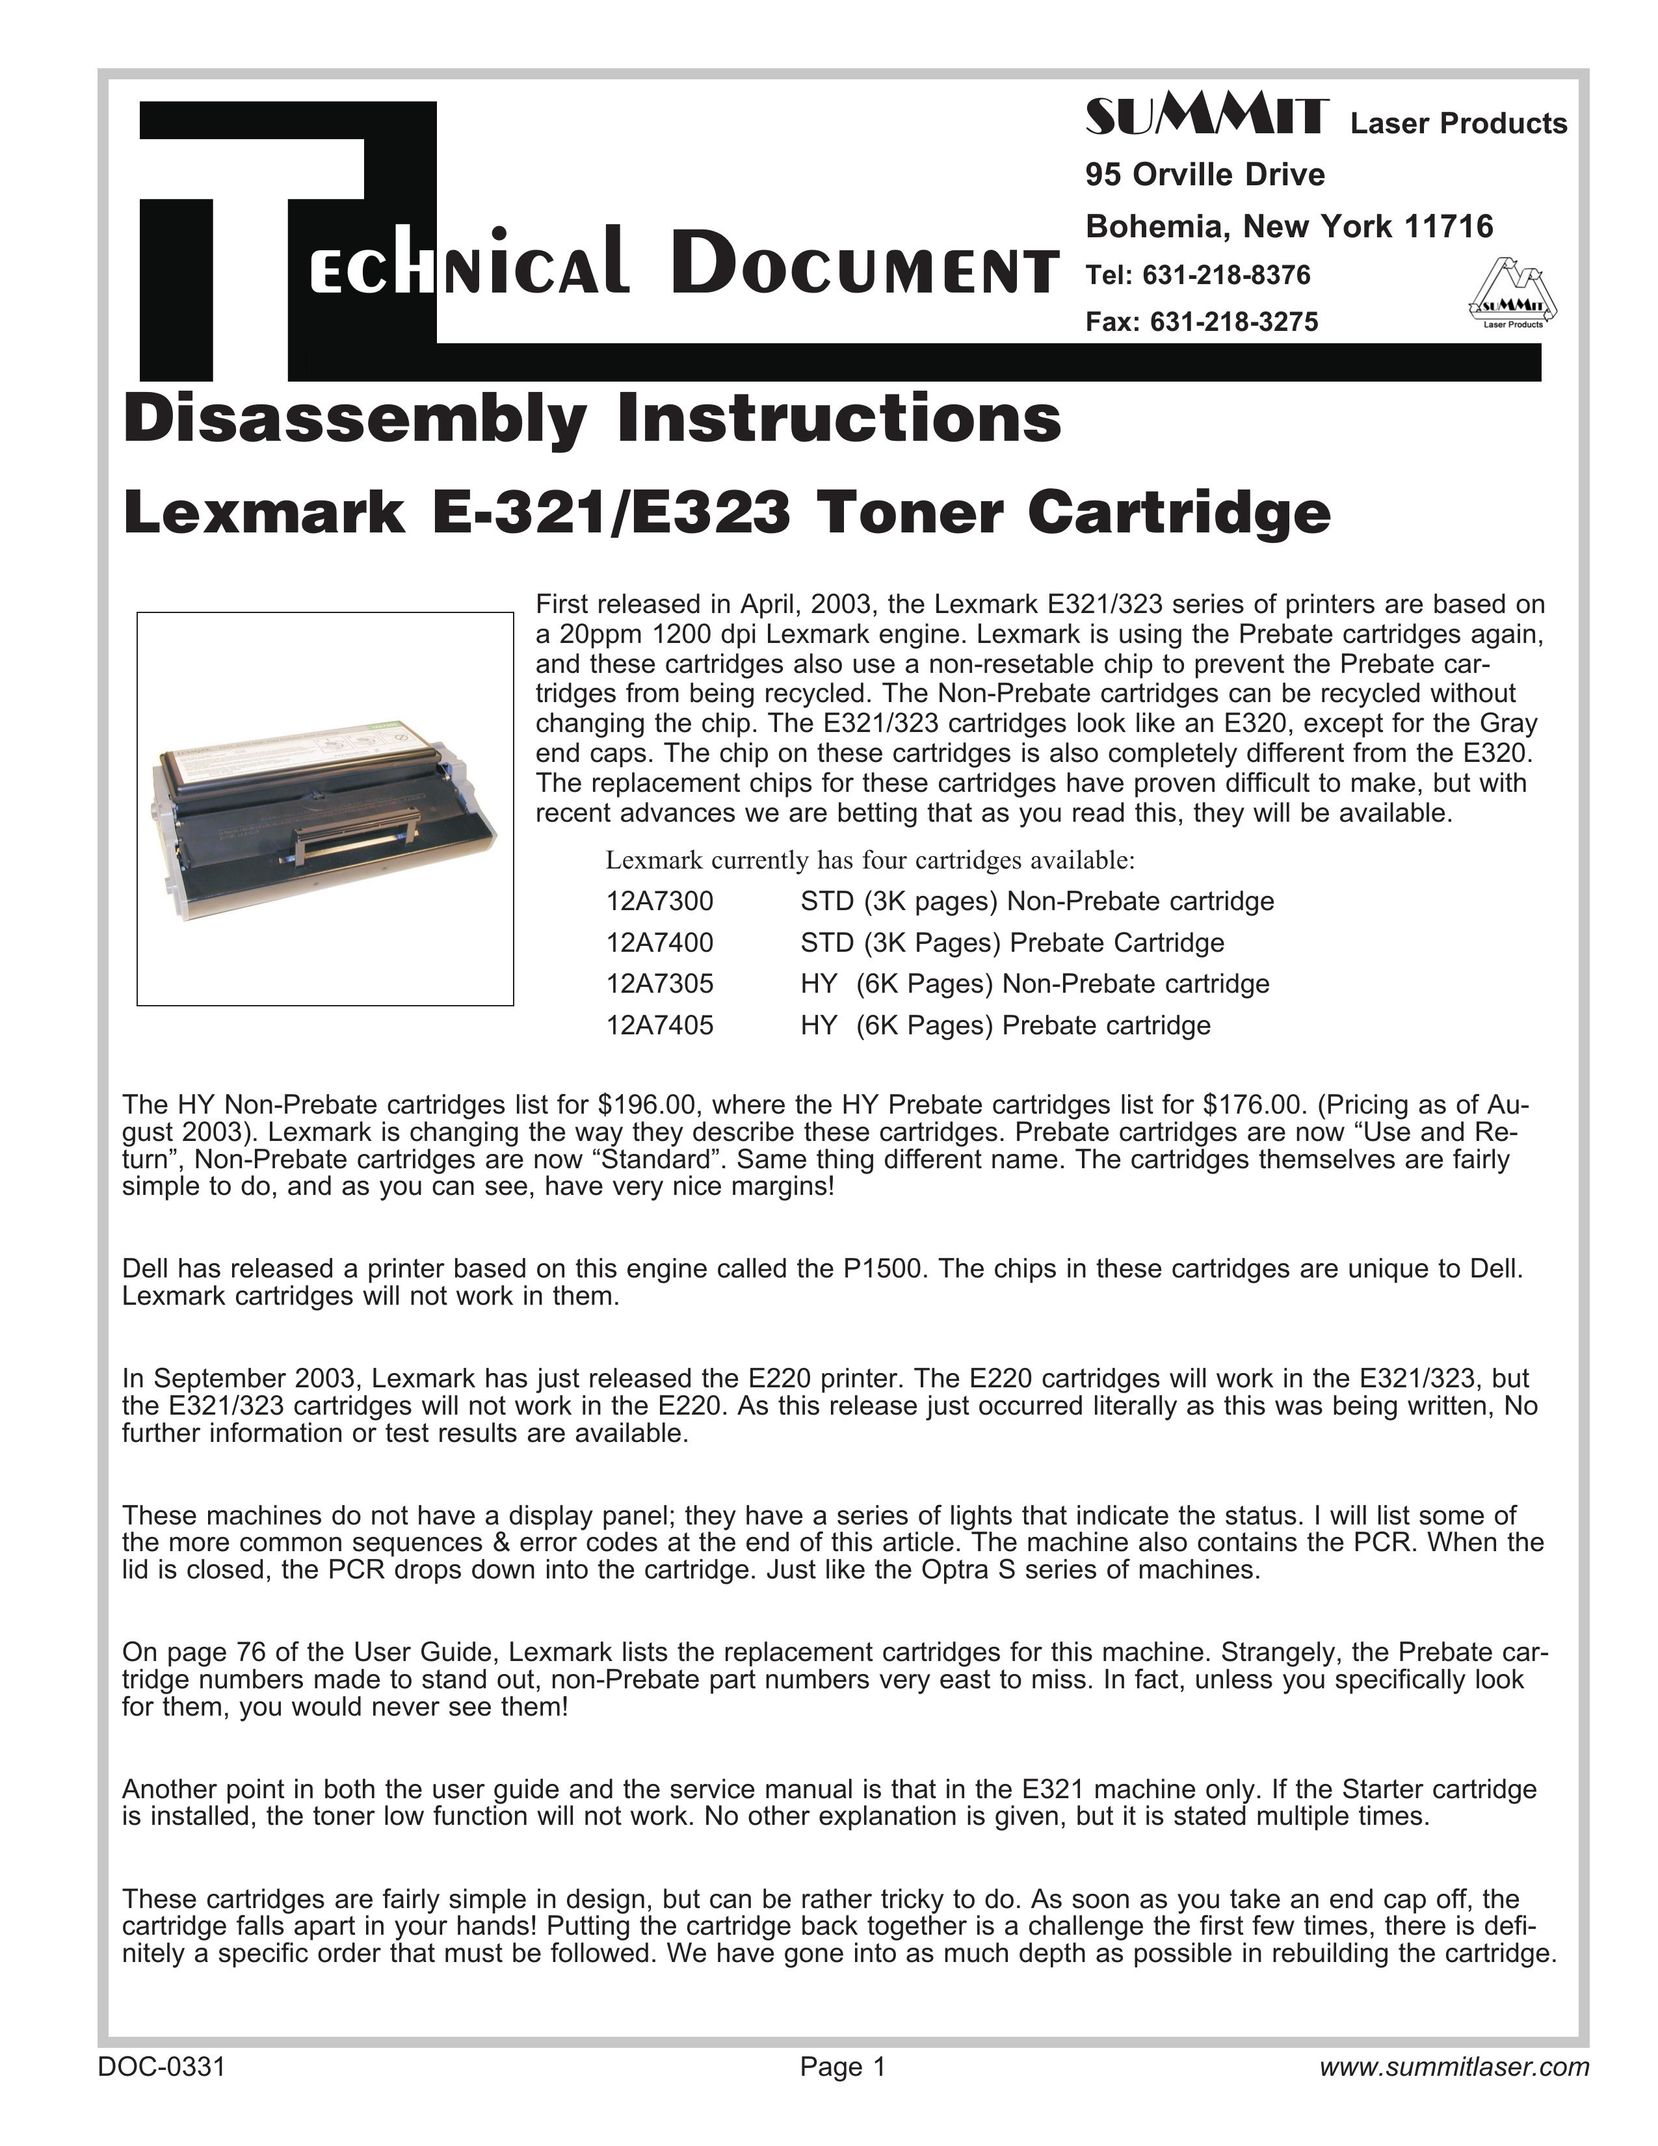 Summit E-321 Printer Accessories User Manual